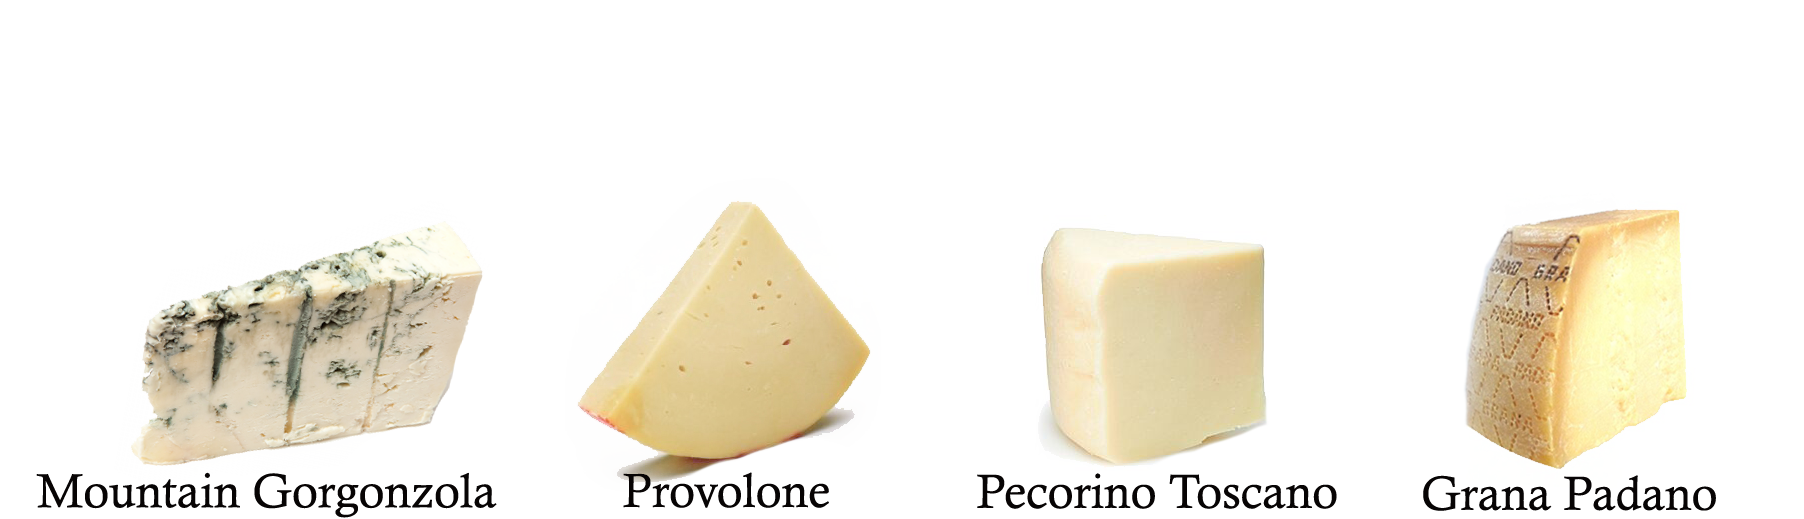 Italian Cheese Sampler, 2-Pound Provolone Piccante, Grana Padano Stravecchio, Mountain Gorgonzola, Pecorino Toscano